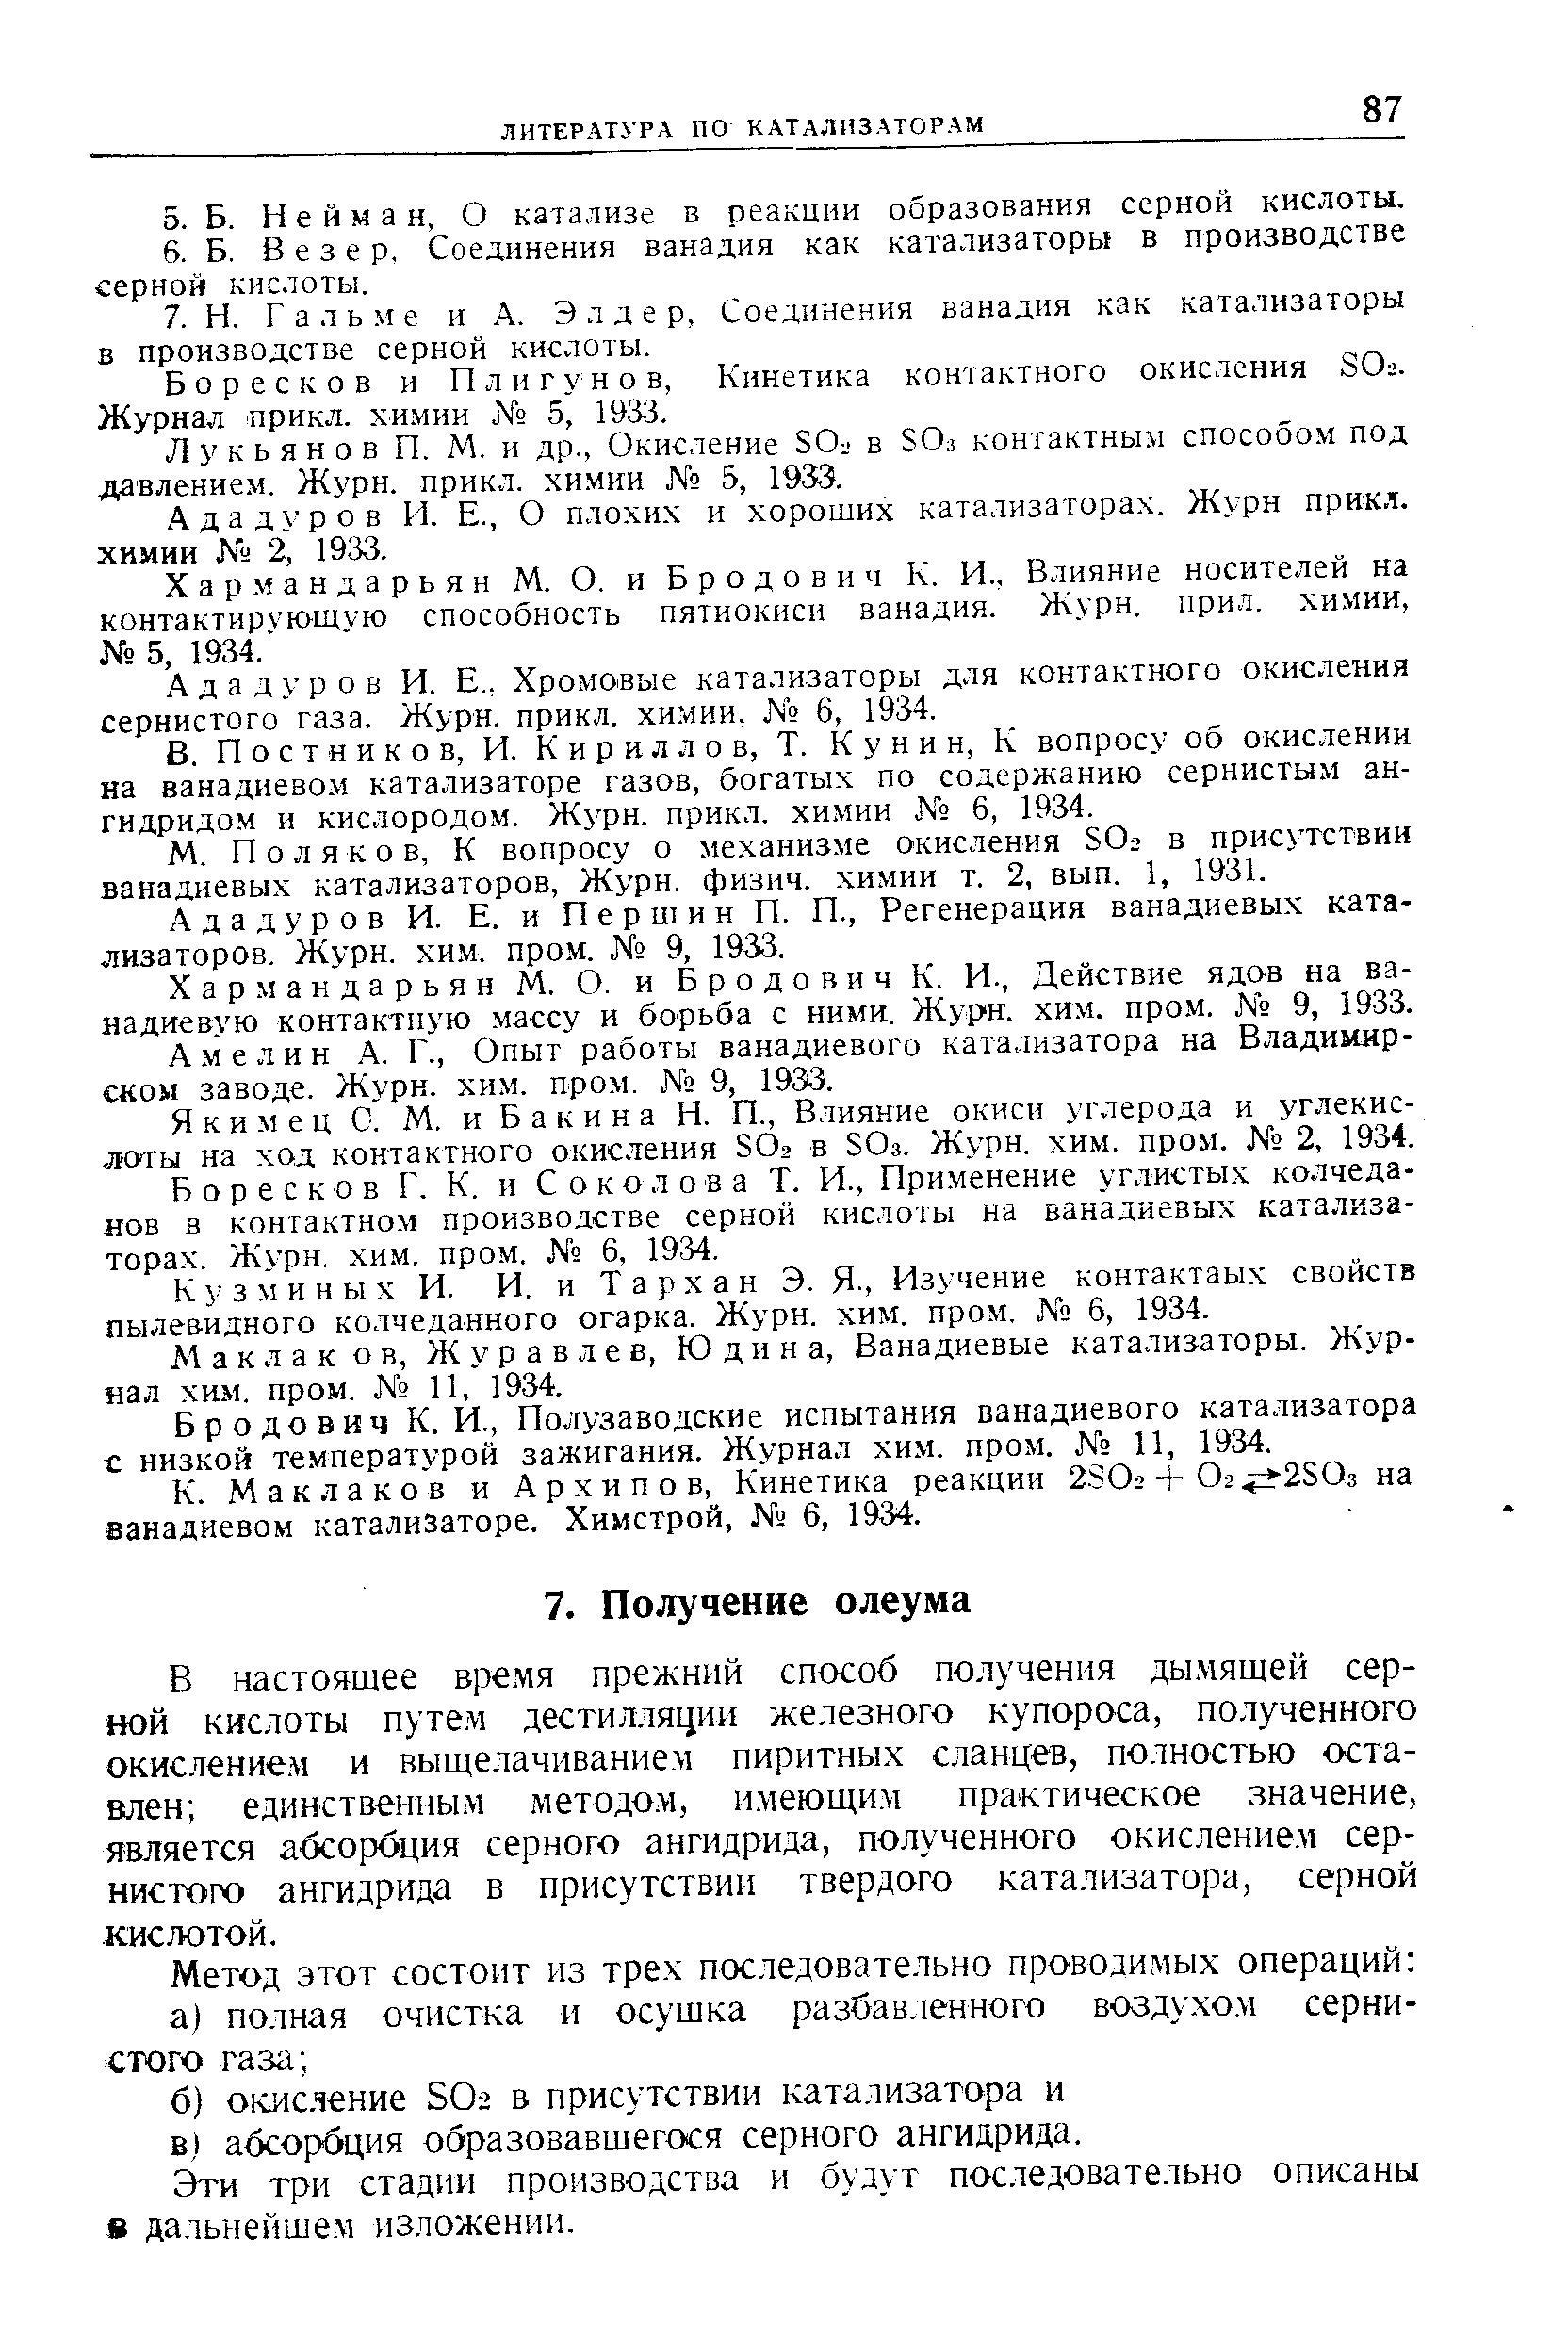 Боресков и П л и г у н о в, Кинетика контактного окисления 80г. Журнал прикл. хи.мии 5, 1933.